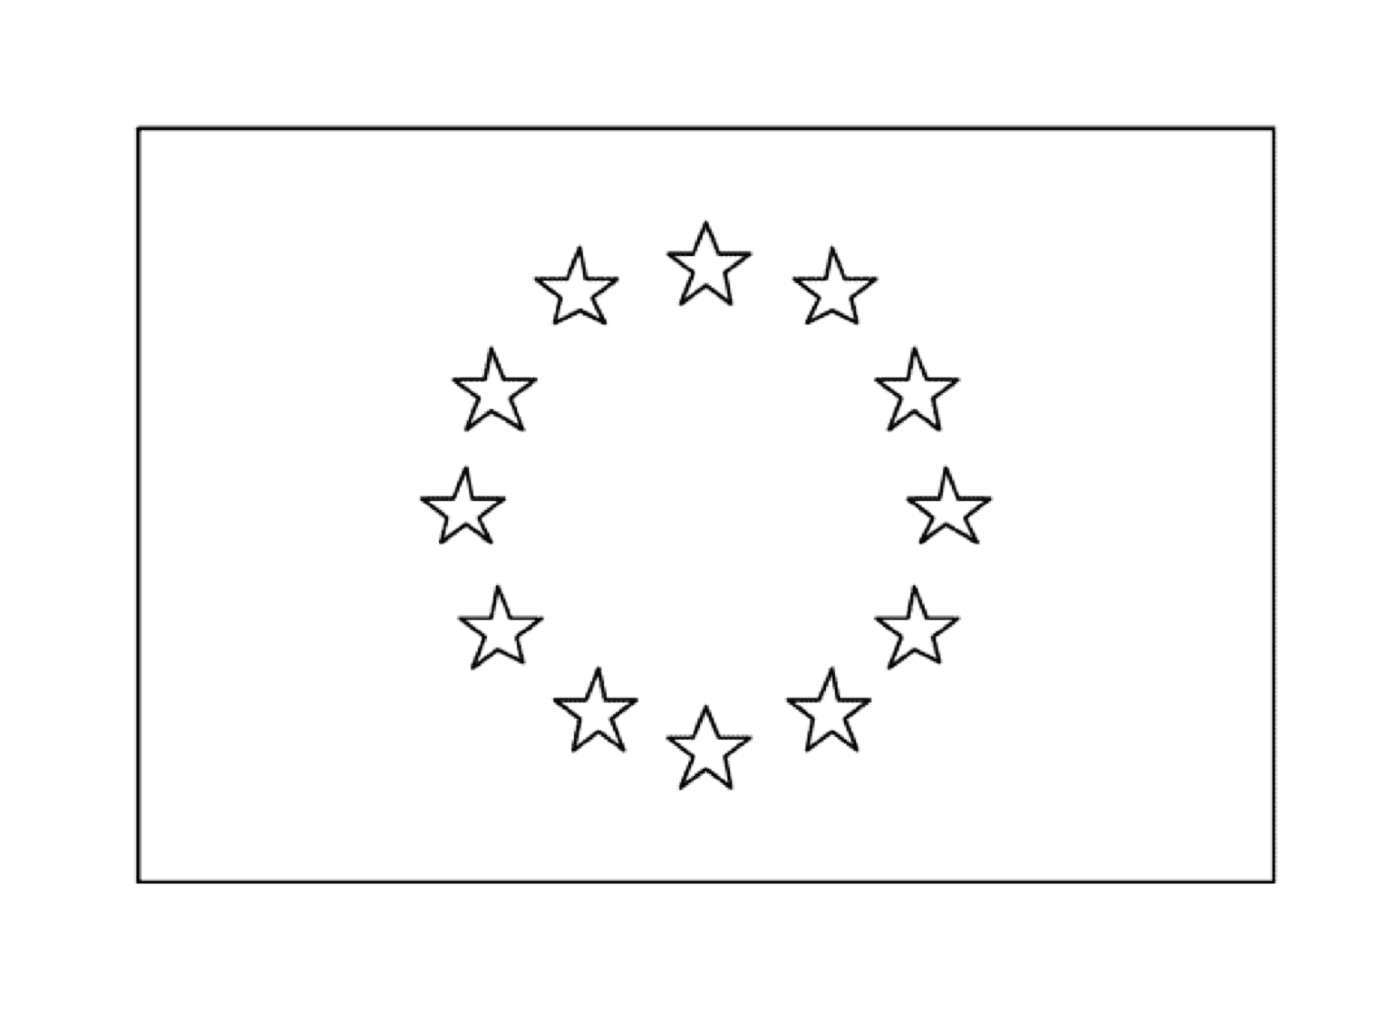  A European Flag 